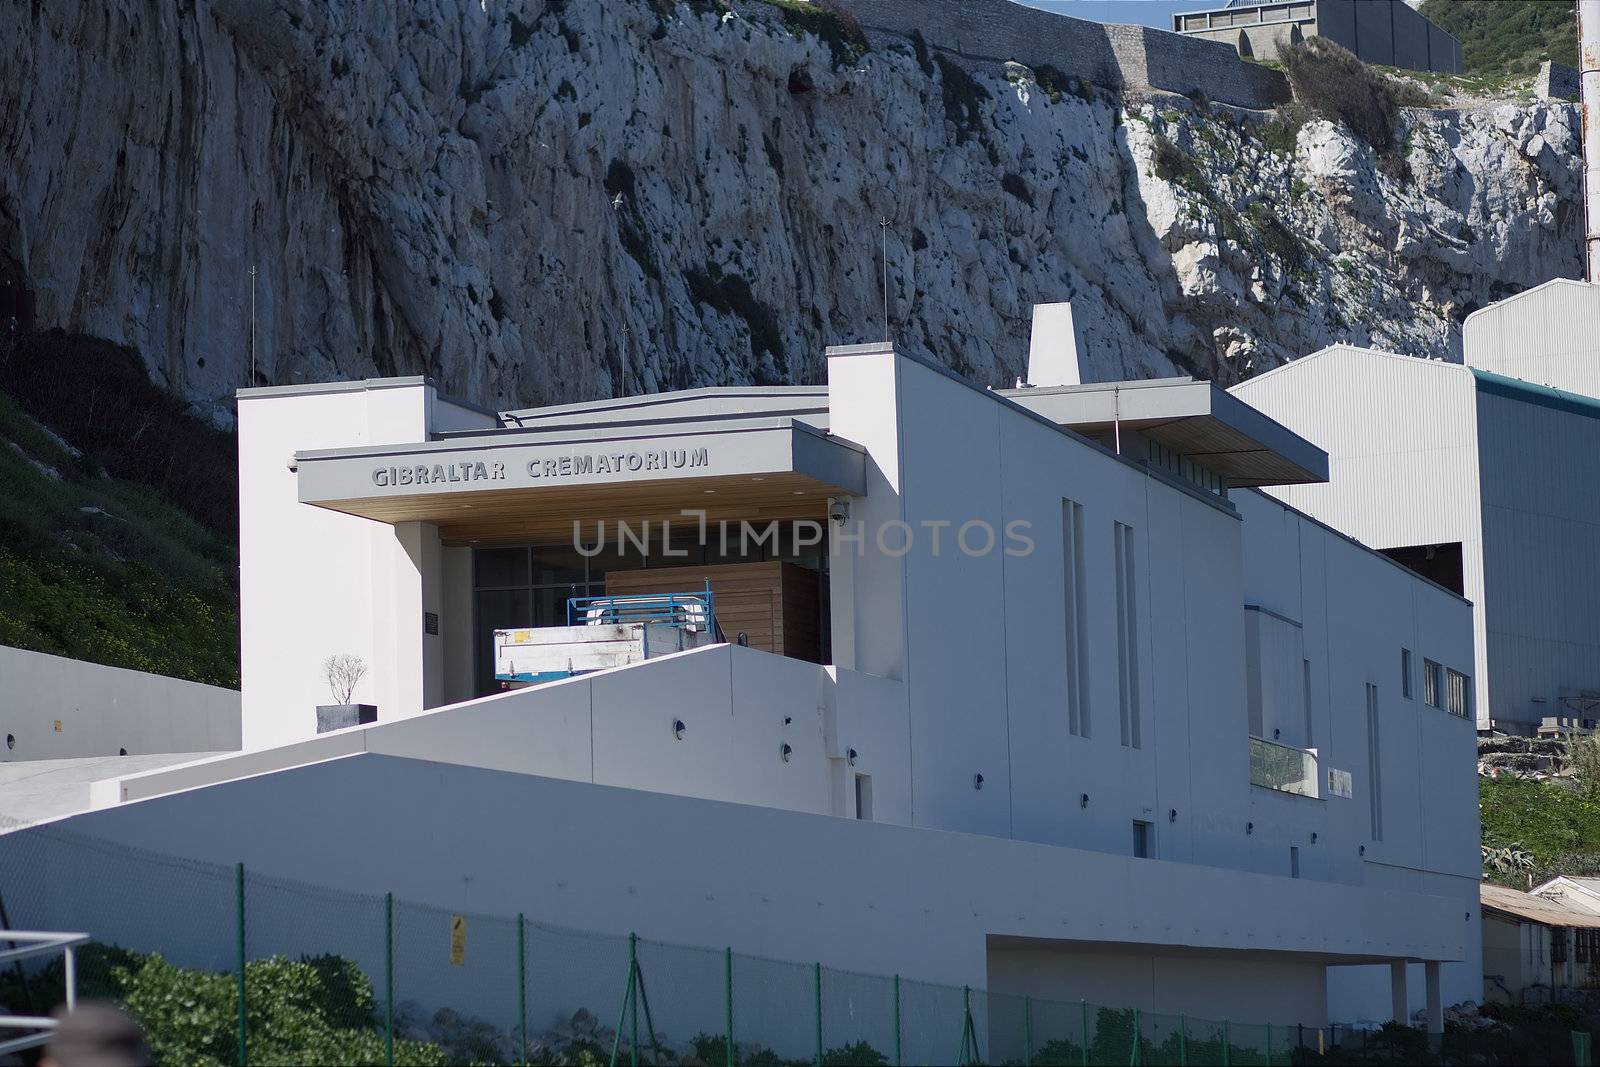 Environmental Waste Management Services - Gibraltar Crematorium. EWMS